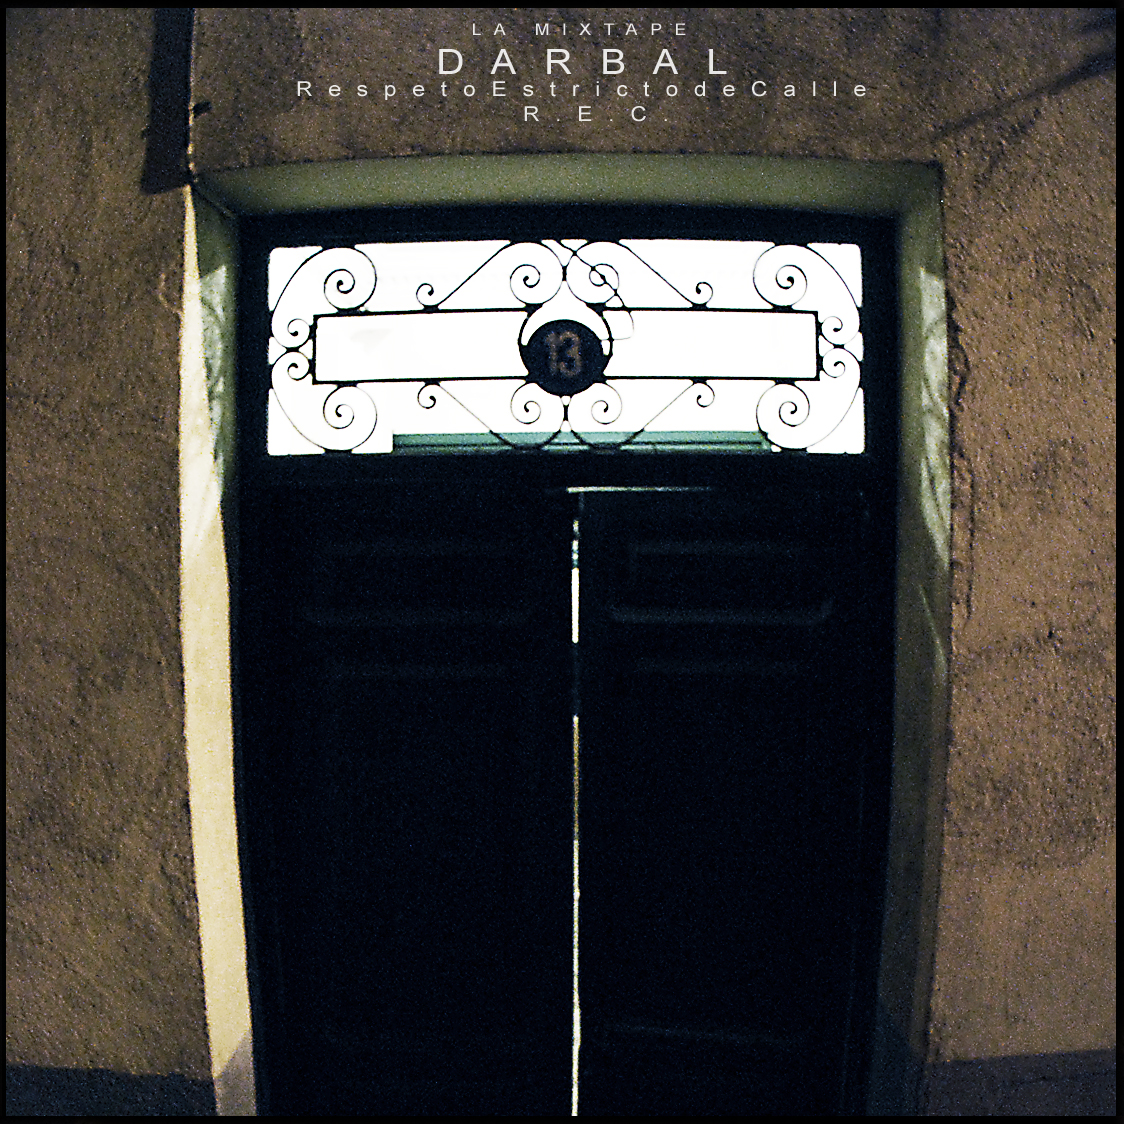 Darbal_-_r.e.c._la_mixtape